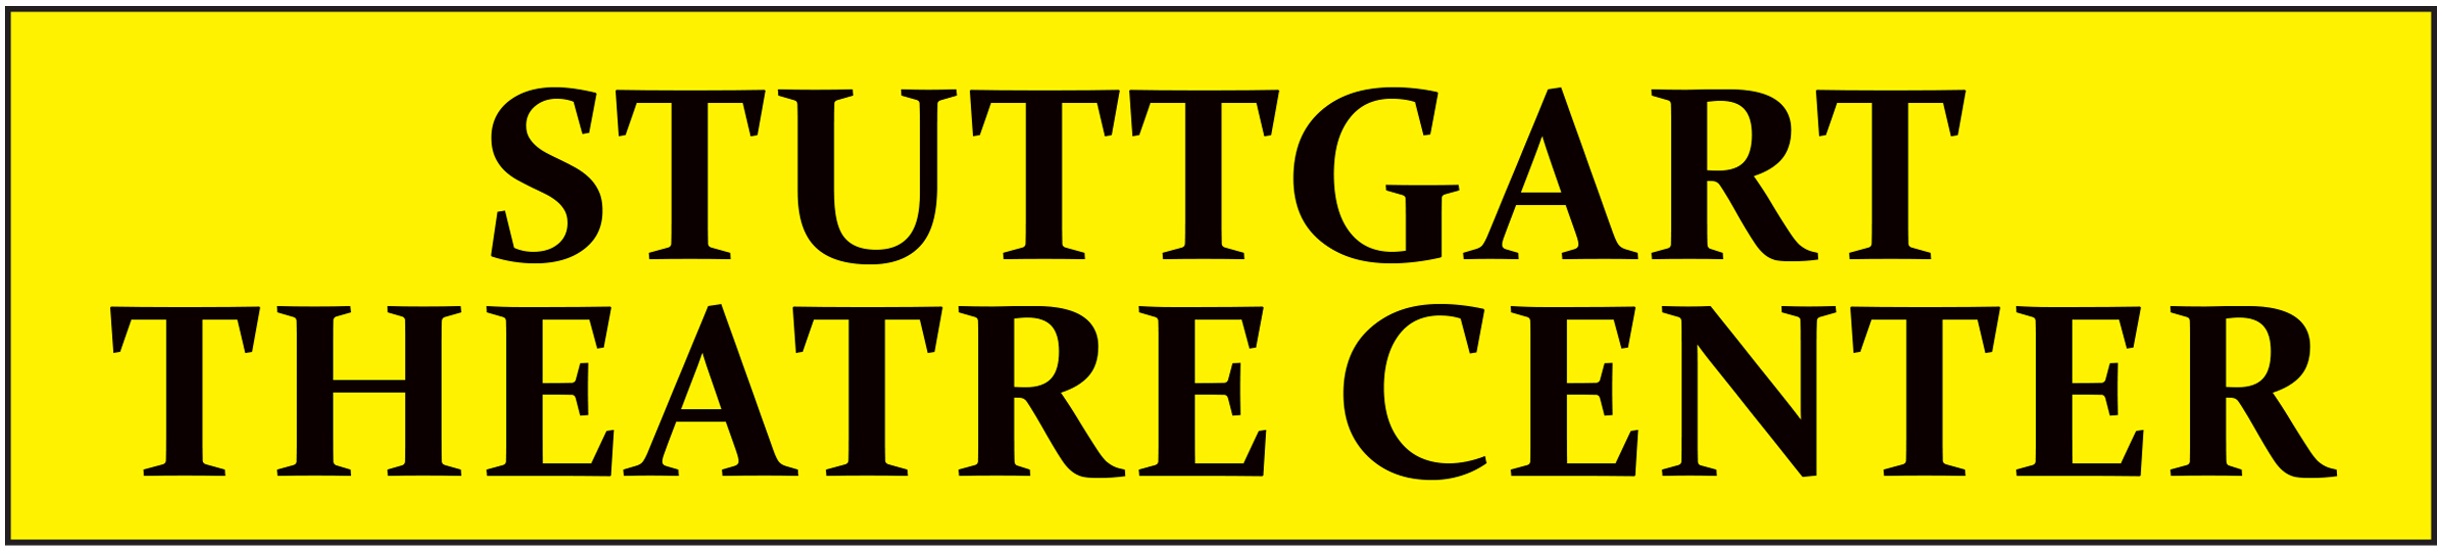 Stuttgart Theater Center Logo.jpg